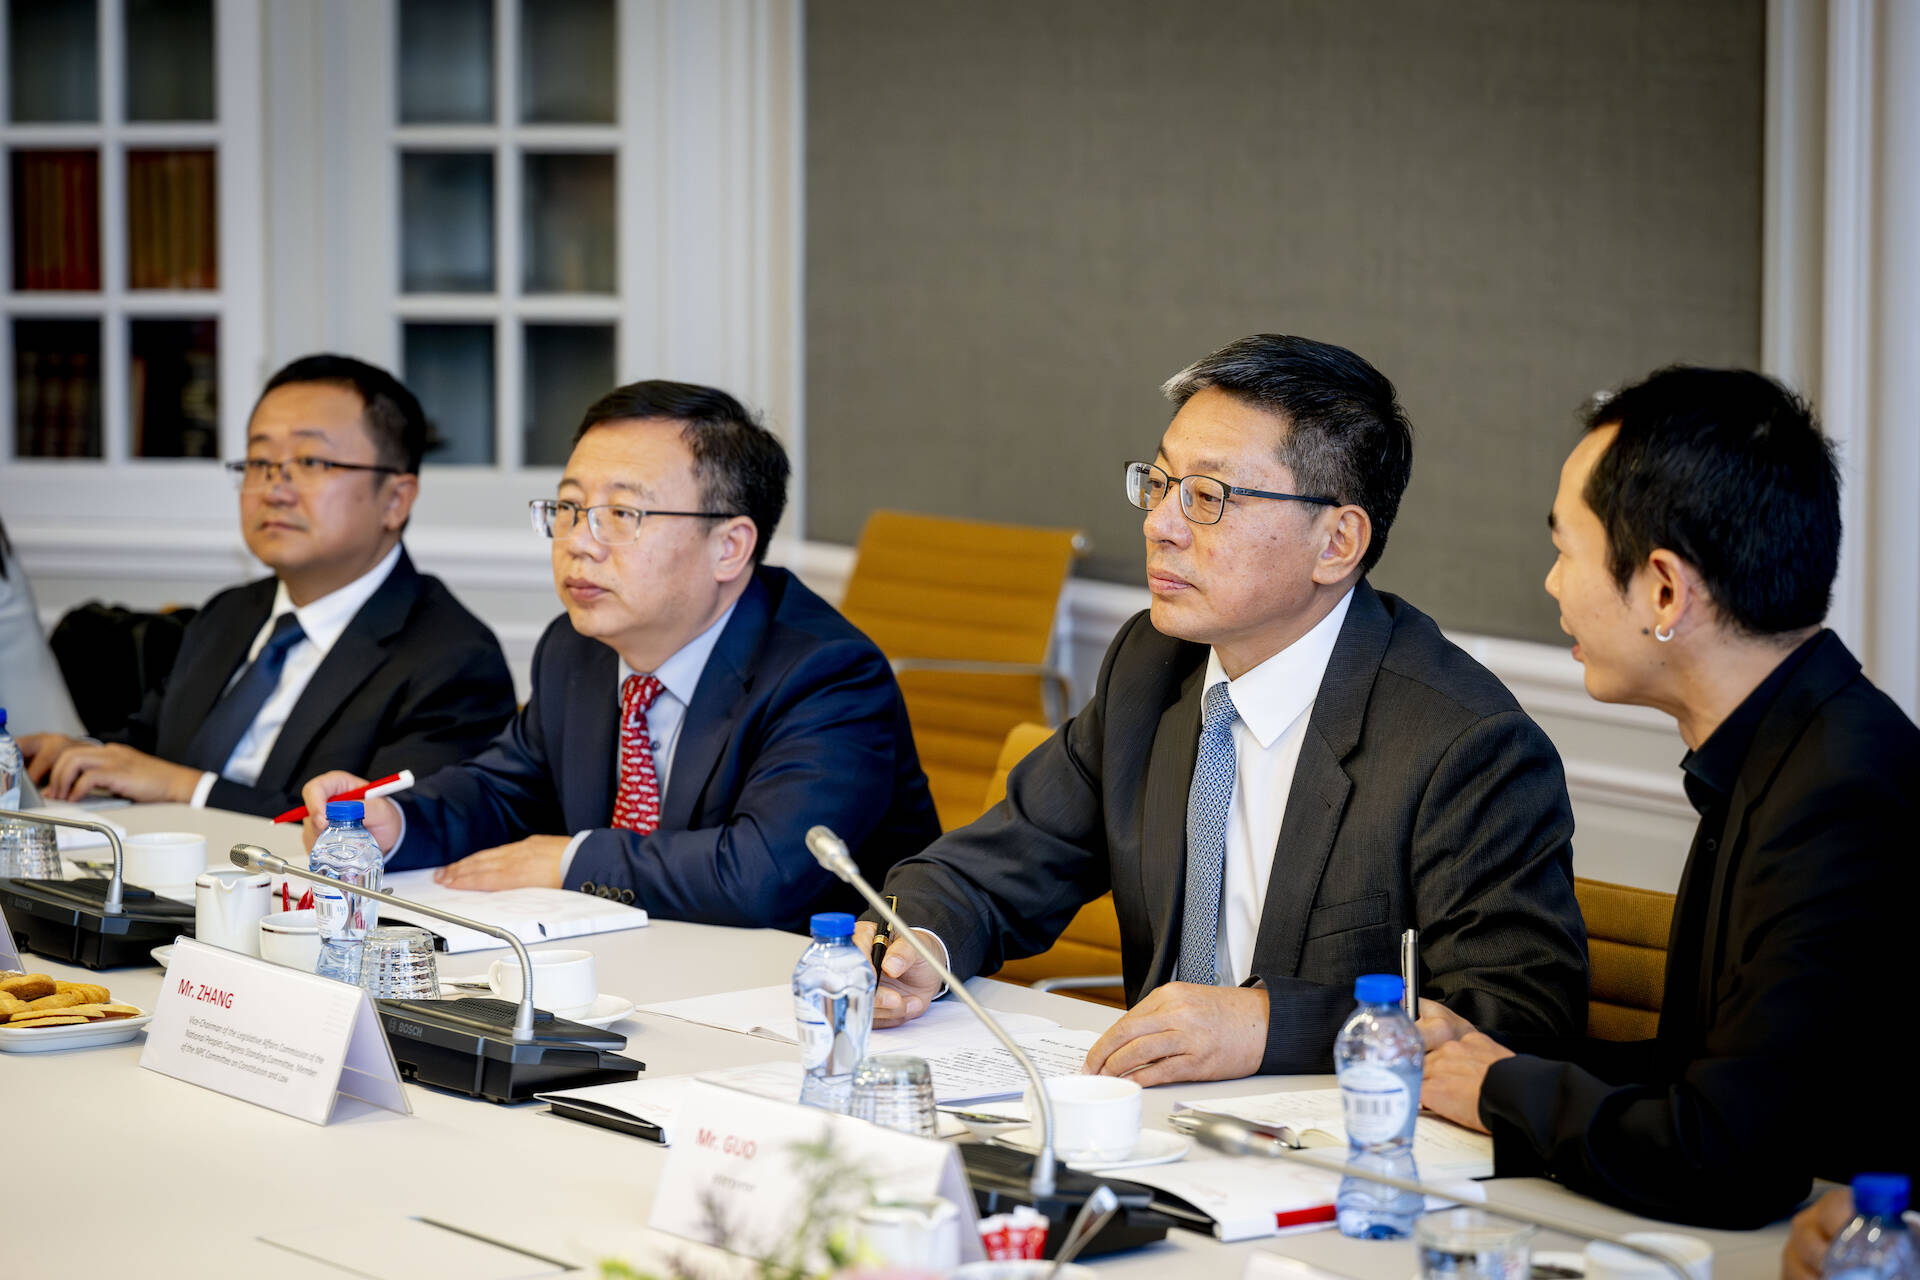 De Chinese delegatie toonde bijzonder interesse in het tweekamerstelsel